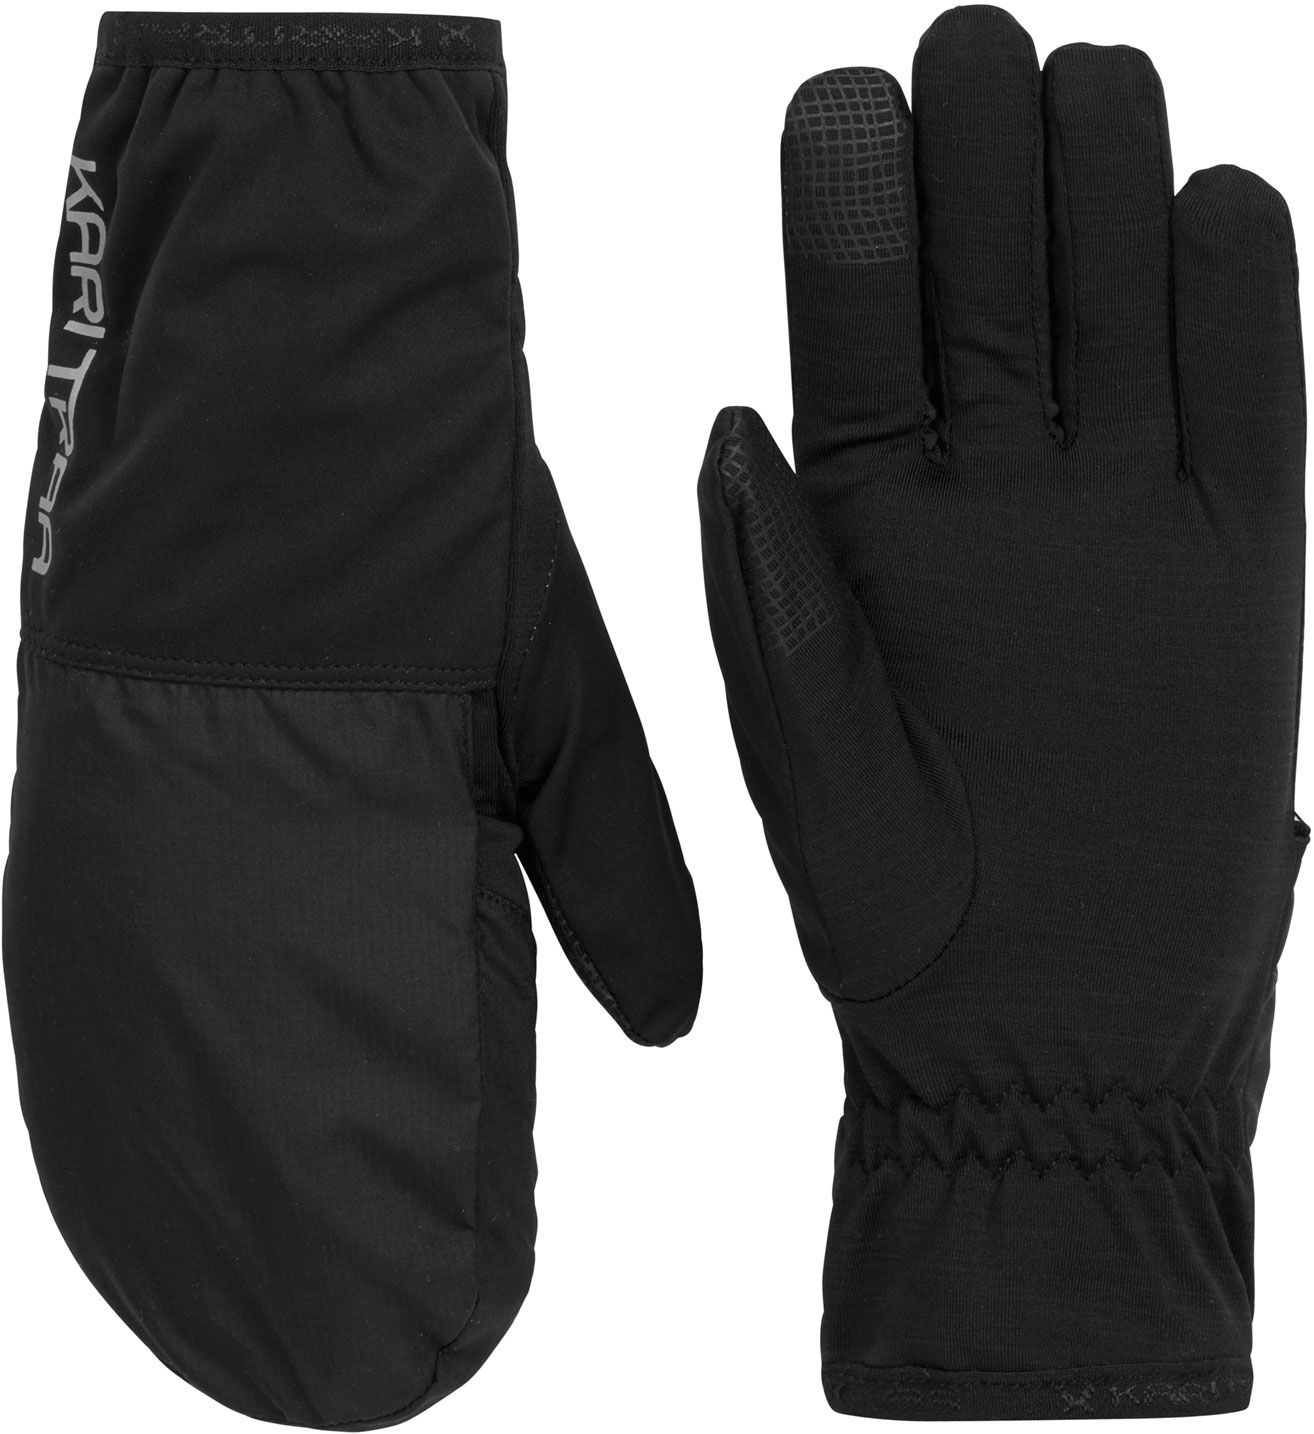 Women's gloves 2in1